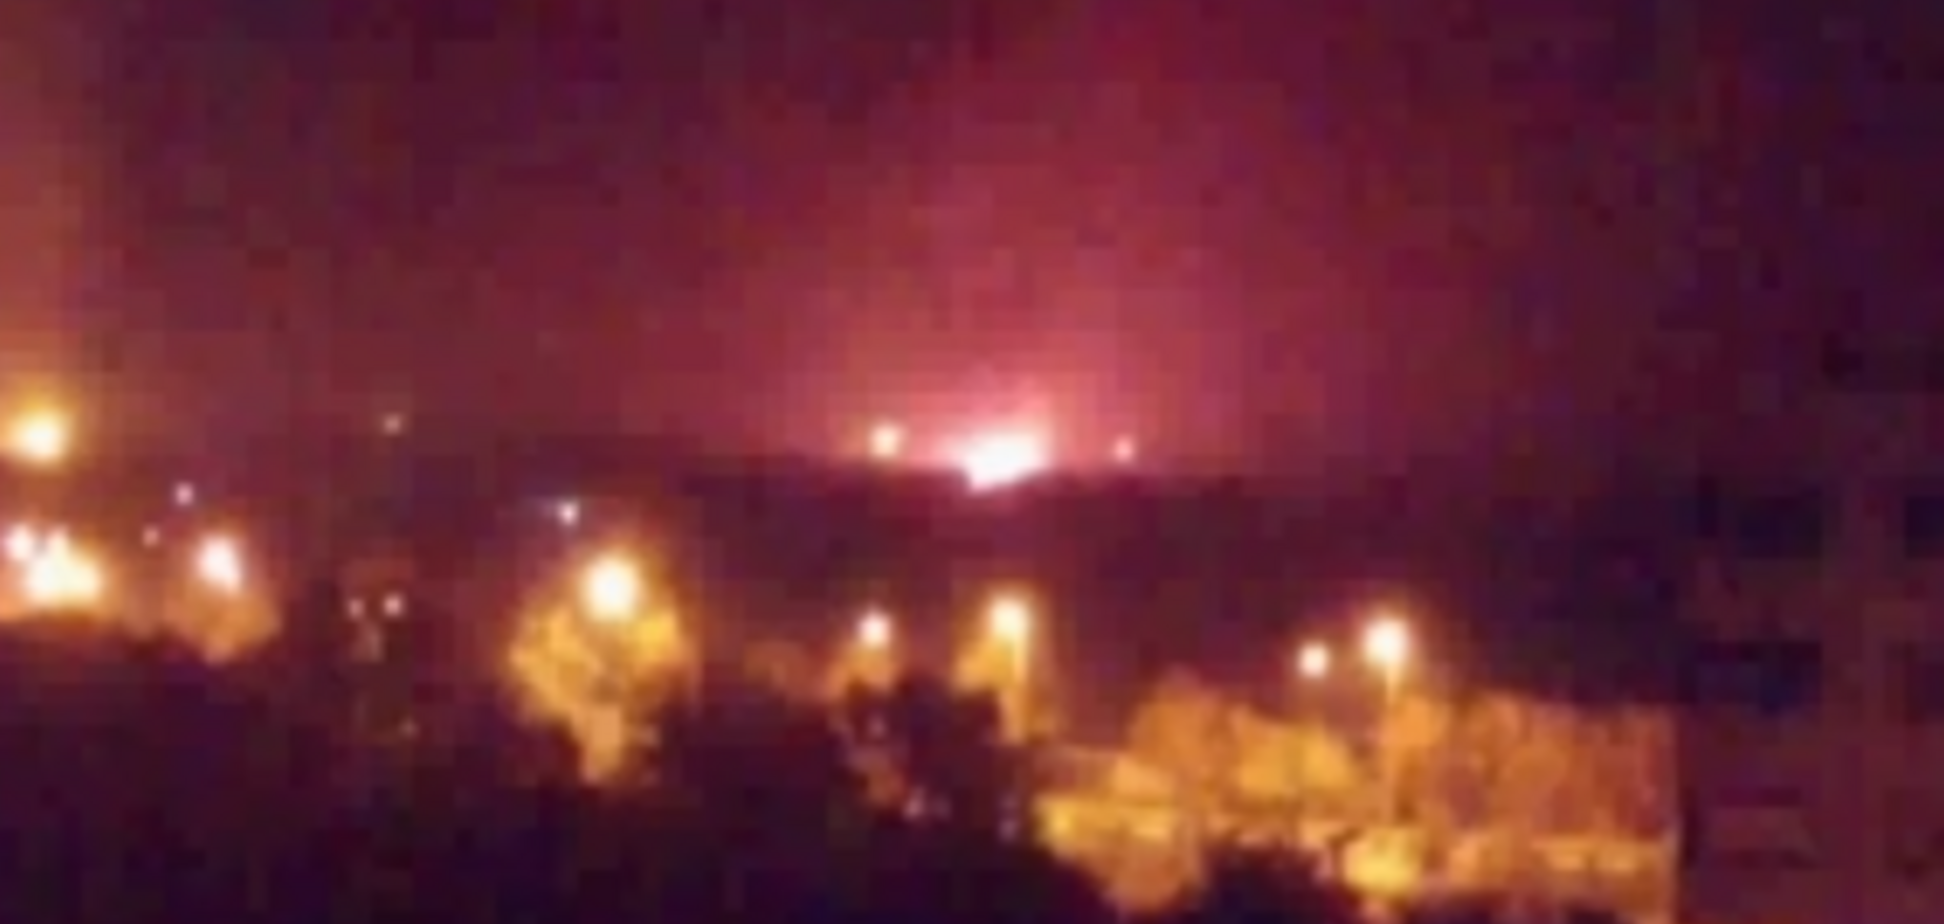 Донецкий аэропорт загорелся после взрывов: видео пожара